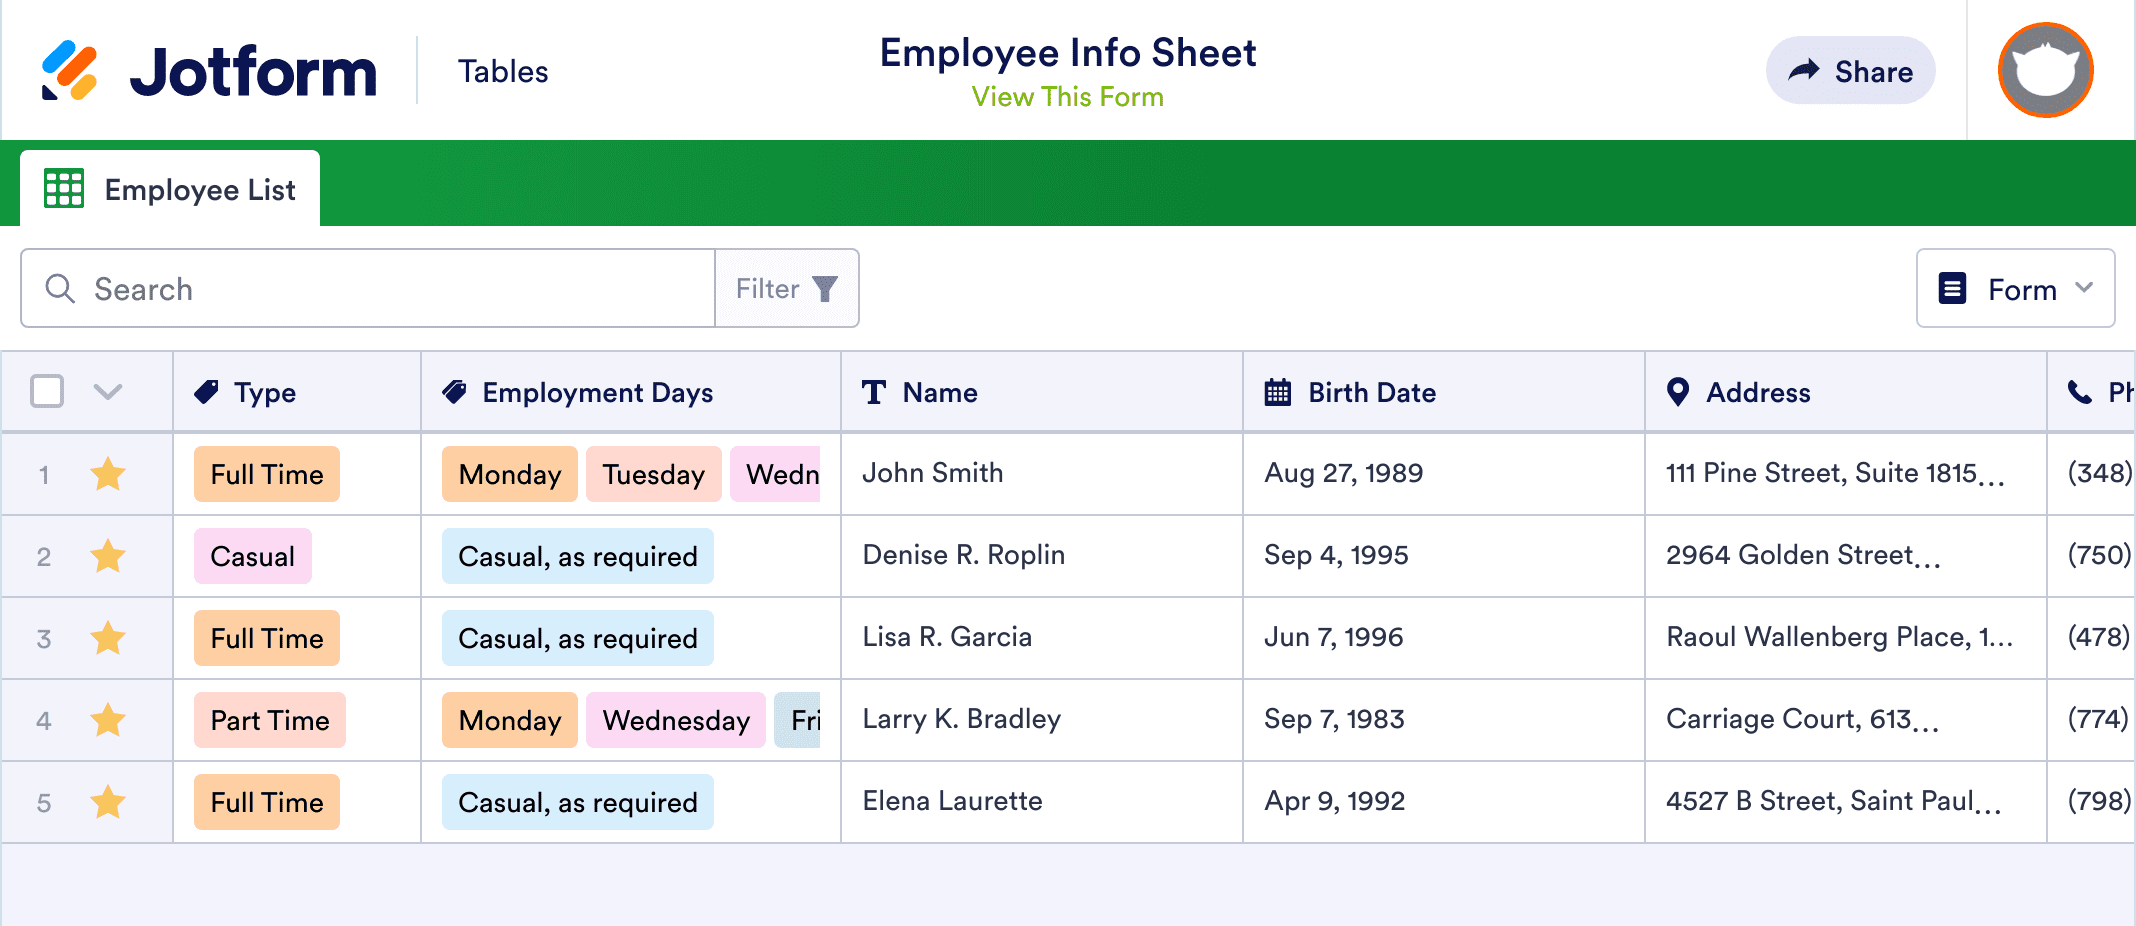 Employee Info Sheet